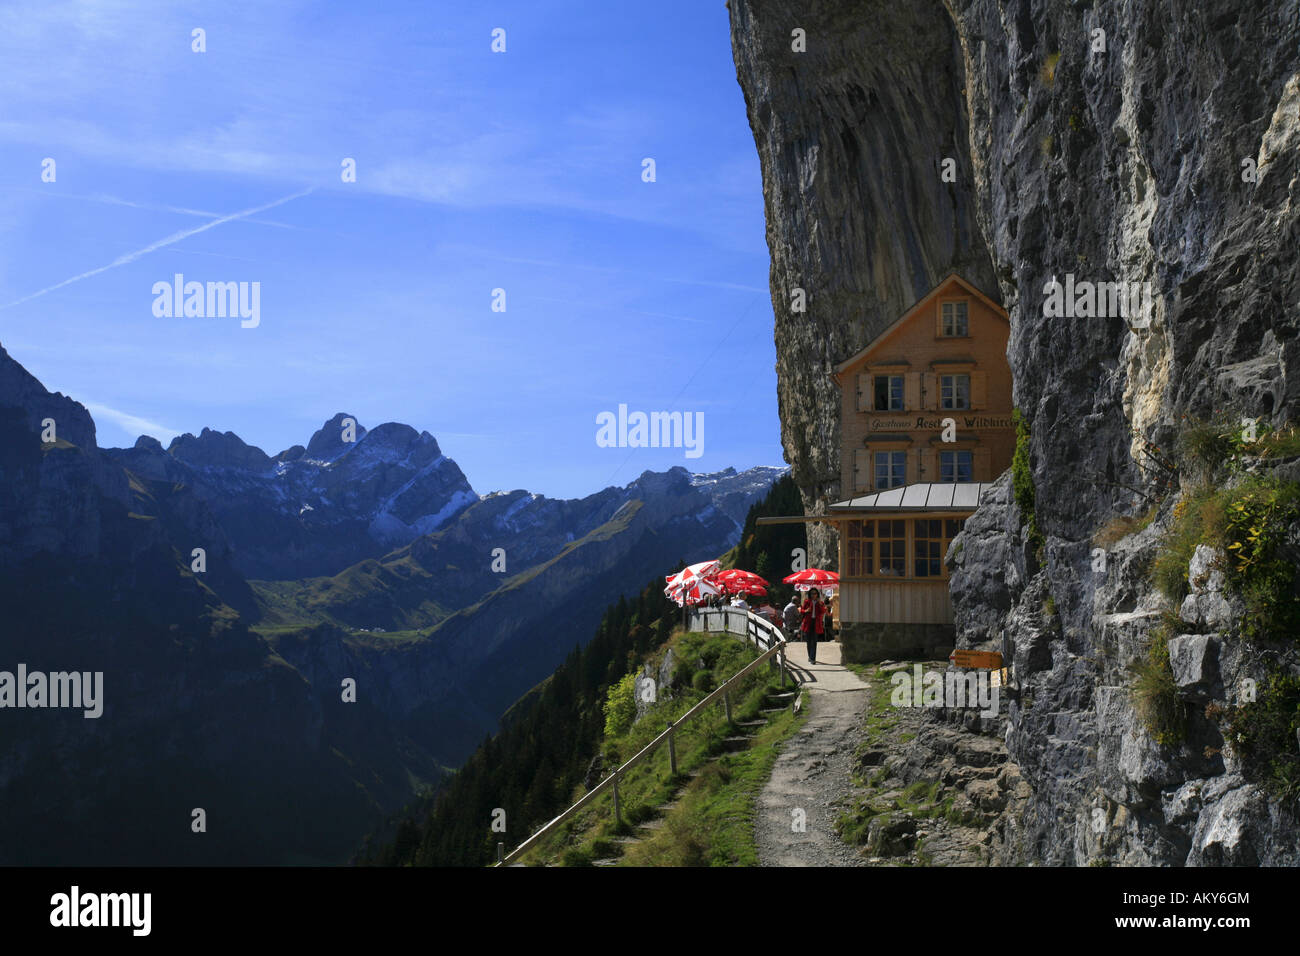 Aescher Taverne und Panorama Blick auf die Berge in der steilen zugewandten Nordflanke der Ebenalp Berg, Appenzell, Schweiz Stockfoto